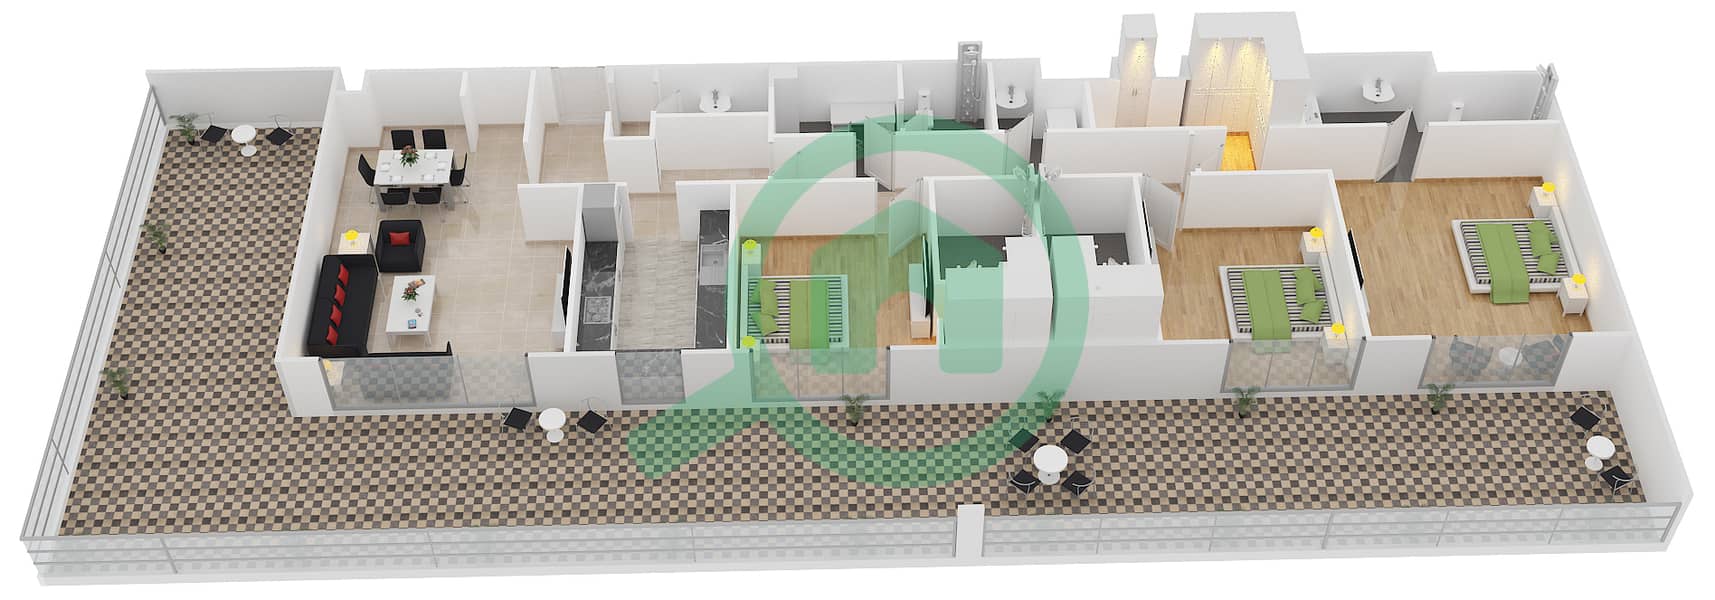 Belgravia 1 - 3 Bedroom Apartment Type D1 Floor plan interactive3D